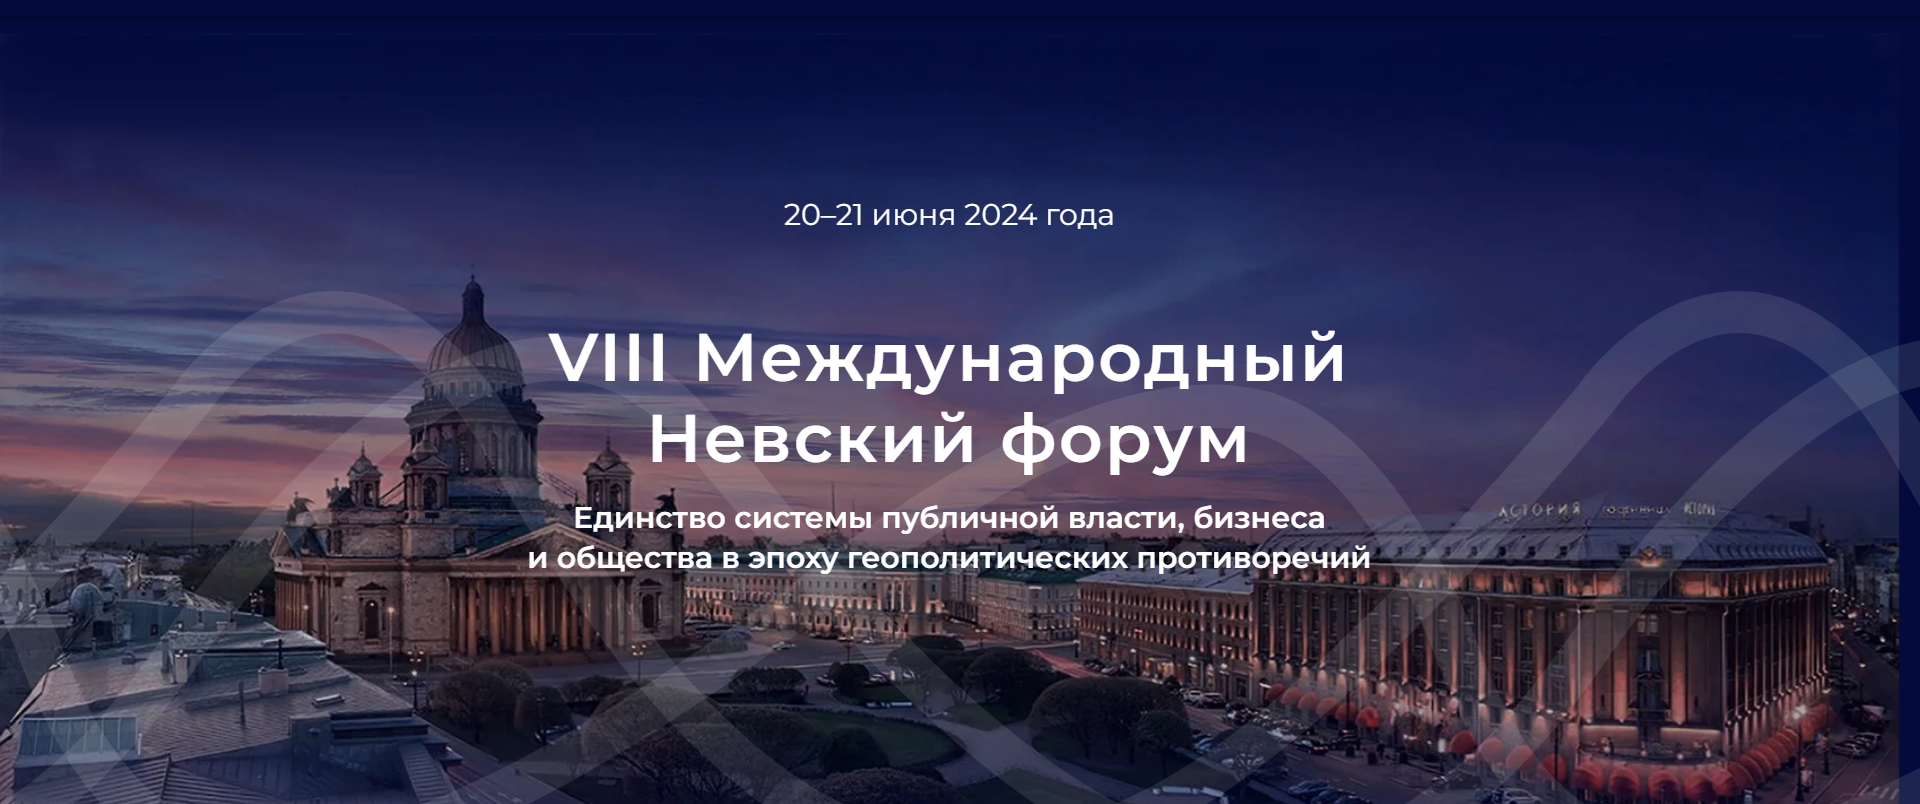 Vernadsky University Engages in the VIII Nevsky International Forum